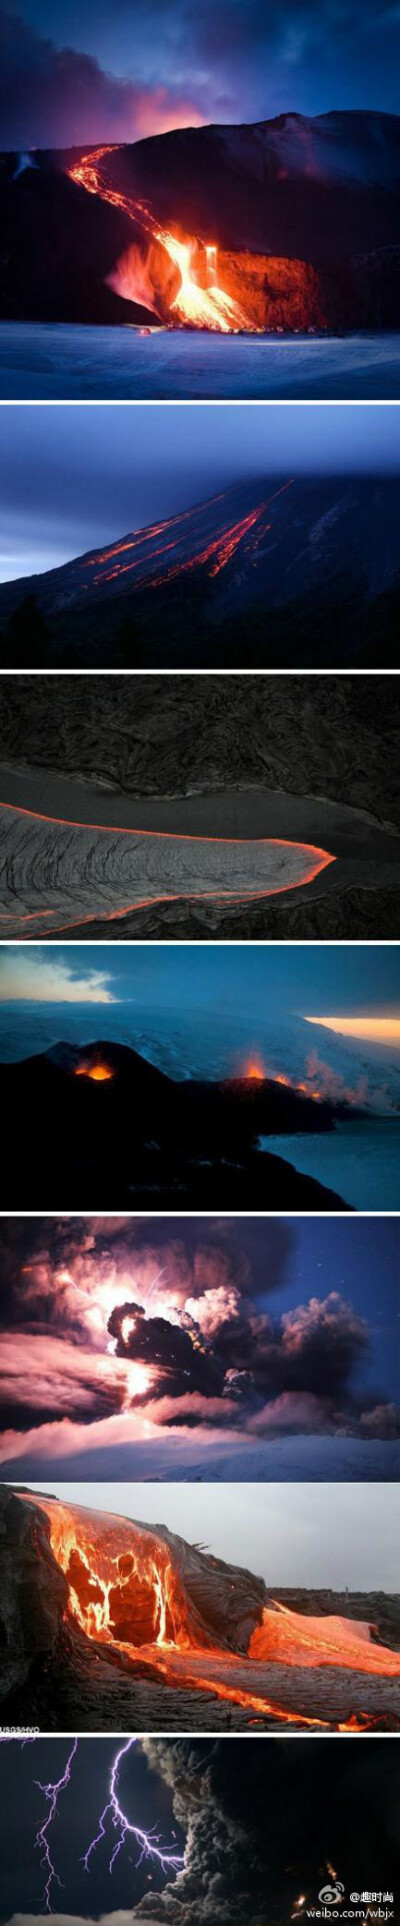 【世界七大火山闪电的瑰丽壮观】1.智力——柴藤火山。2.冰岛——拉冰盖火山。3.意大利——维苏威火山。4.日本——樱岛火山。5.巴布亚新几内亚——塔乌鲁火山。6.美国——阿拉斯加堡垒火山。7.日本——新燃丘火山。只…